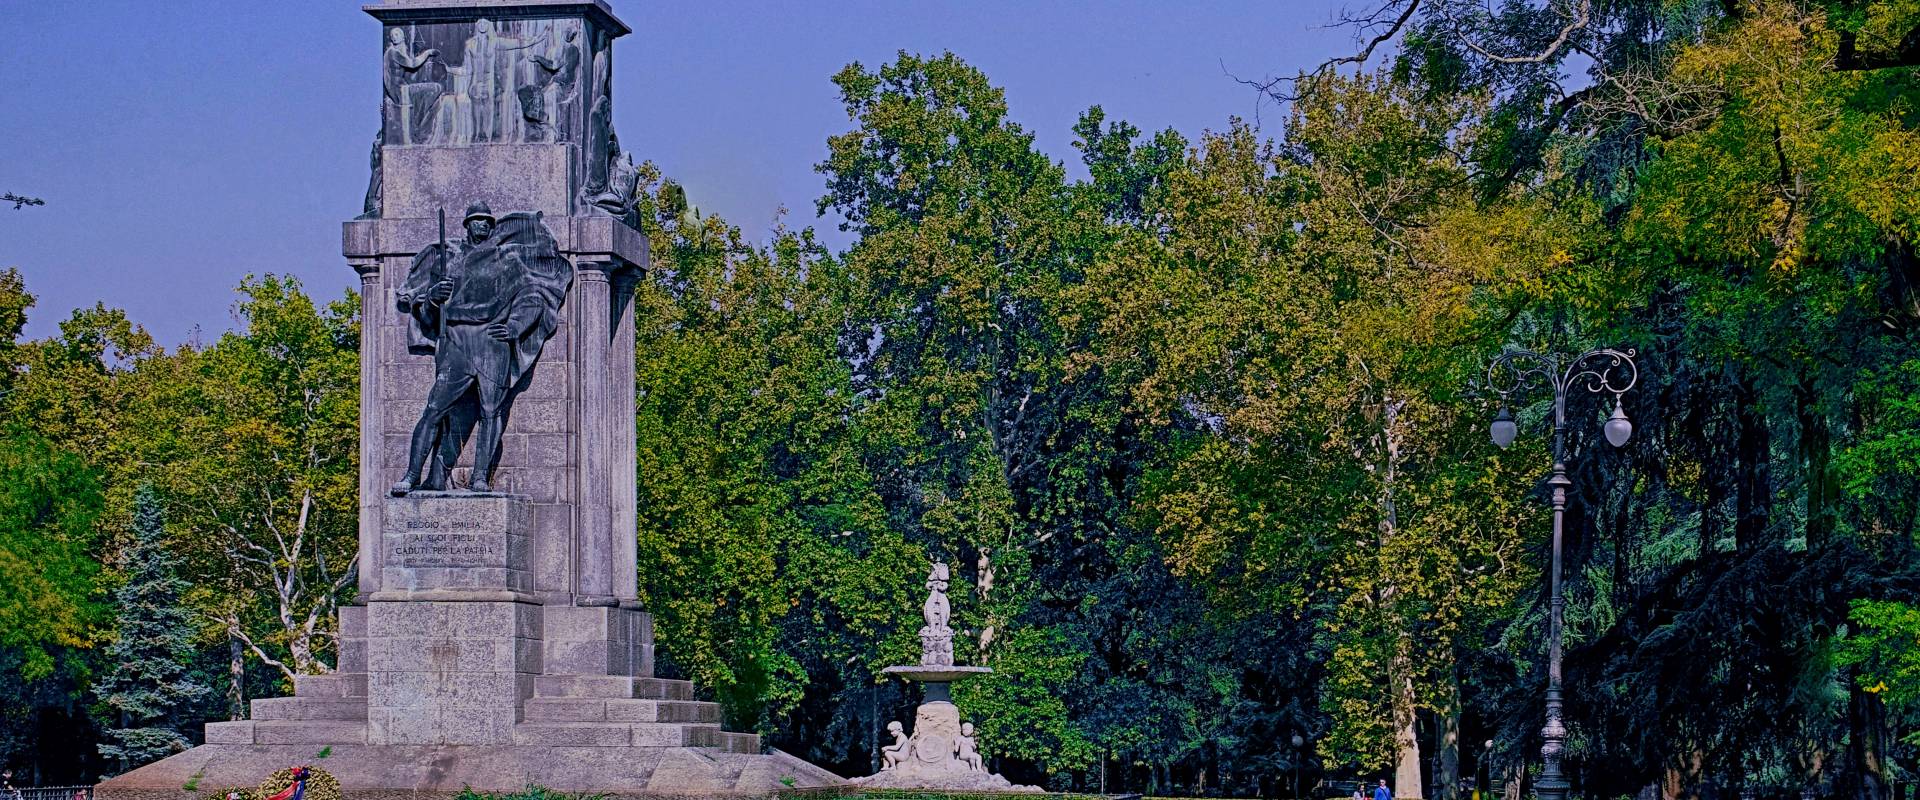 Giardini pubblici caratterizzati dall'imponente monumento ai caduti photo by Caba2011